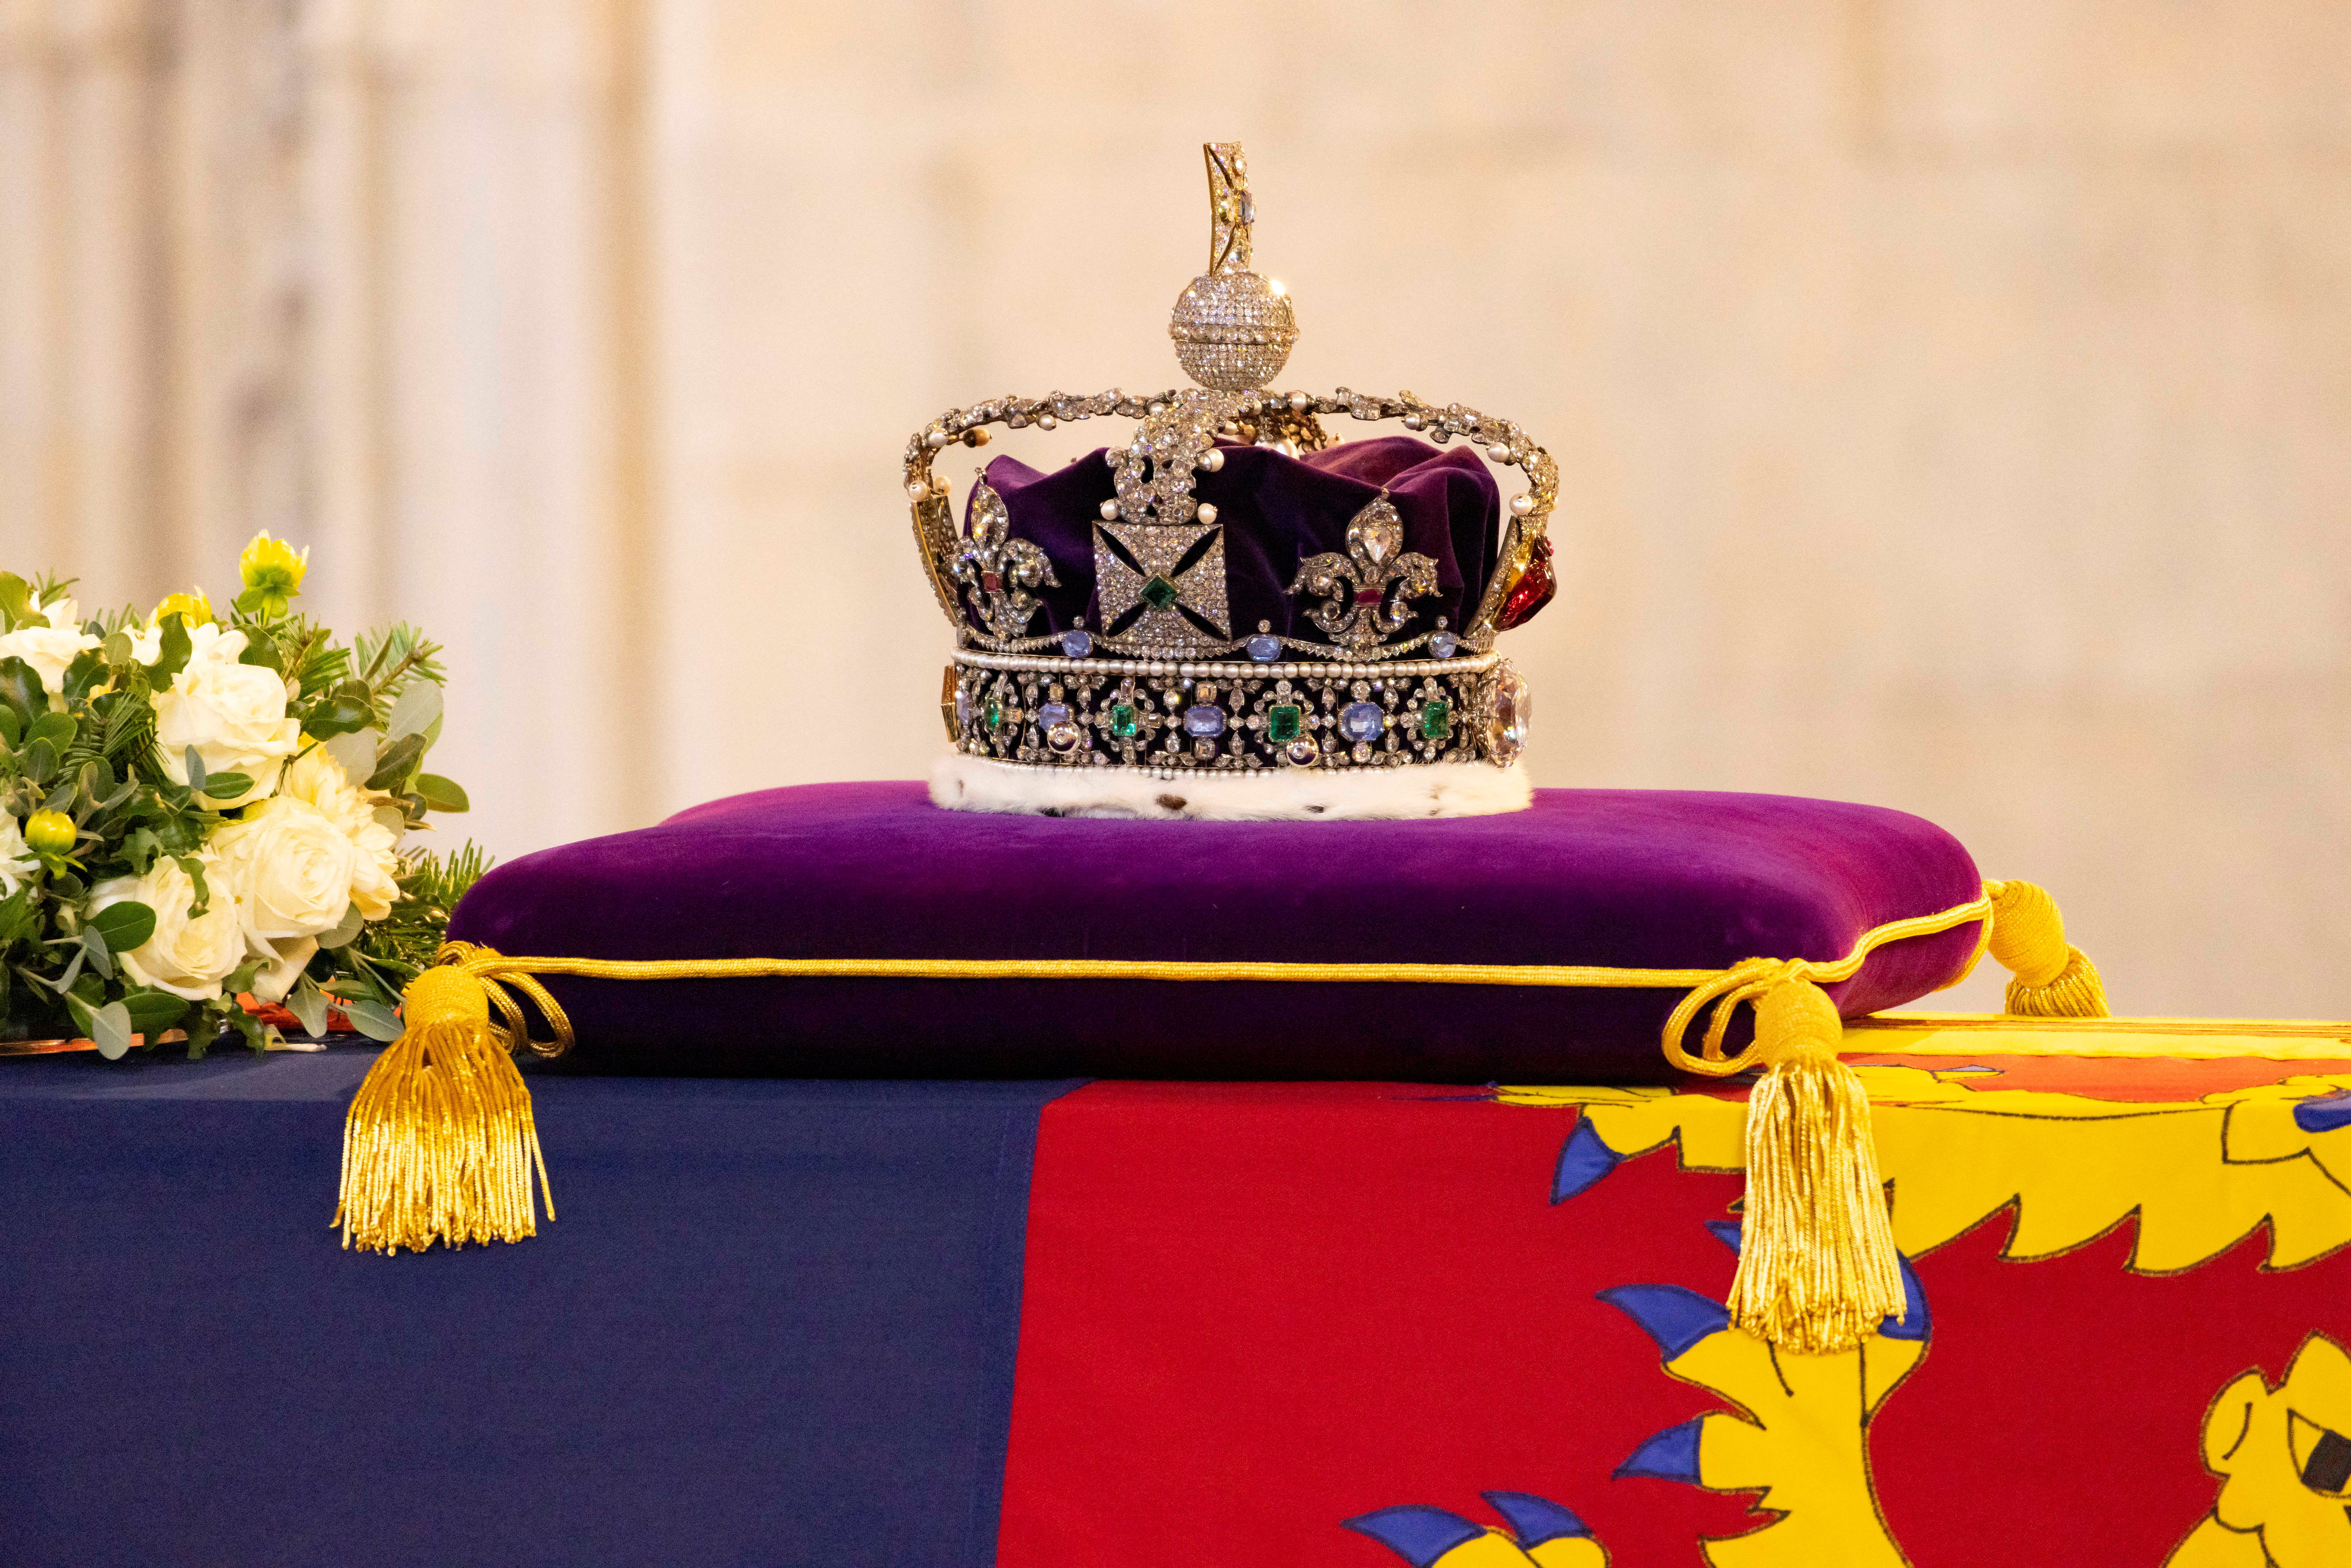 El féretro estaba envuelto en el Estandarte Real y coronado con la Corona del Estado Imperial, con casi 3.000 diamantes incrustados, y un ramo de flores con pino de Balmoral Estate, donde Isabel murió el 8 de septiembre a la edad de 96 años.